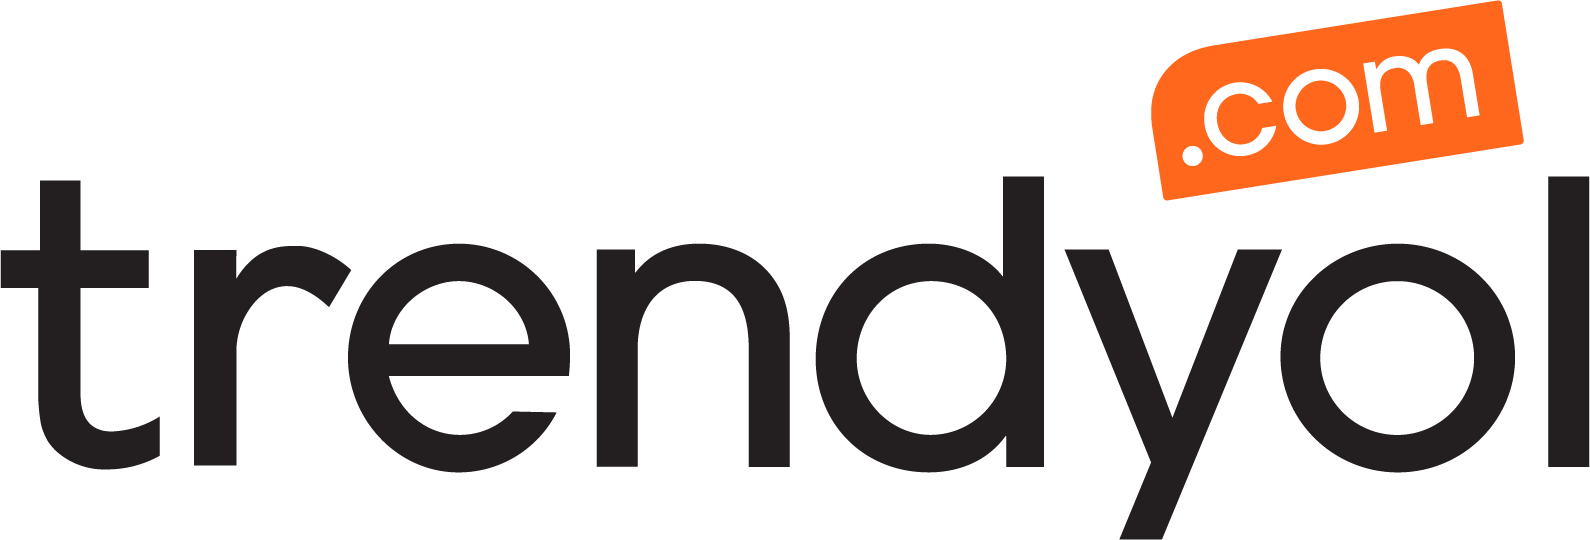 Vision Fund investment portfolio company Trendyol's logo